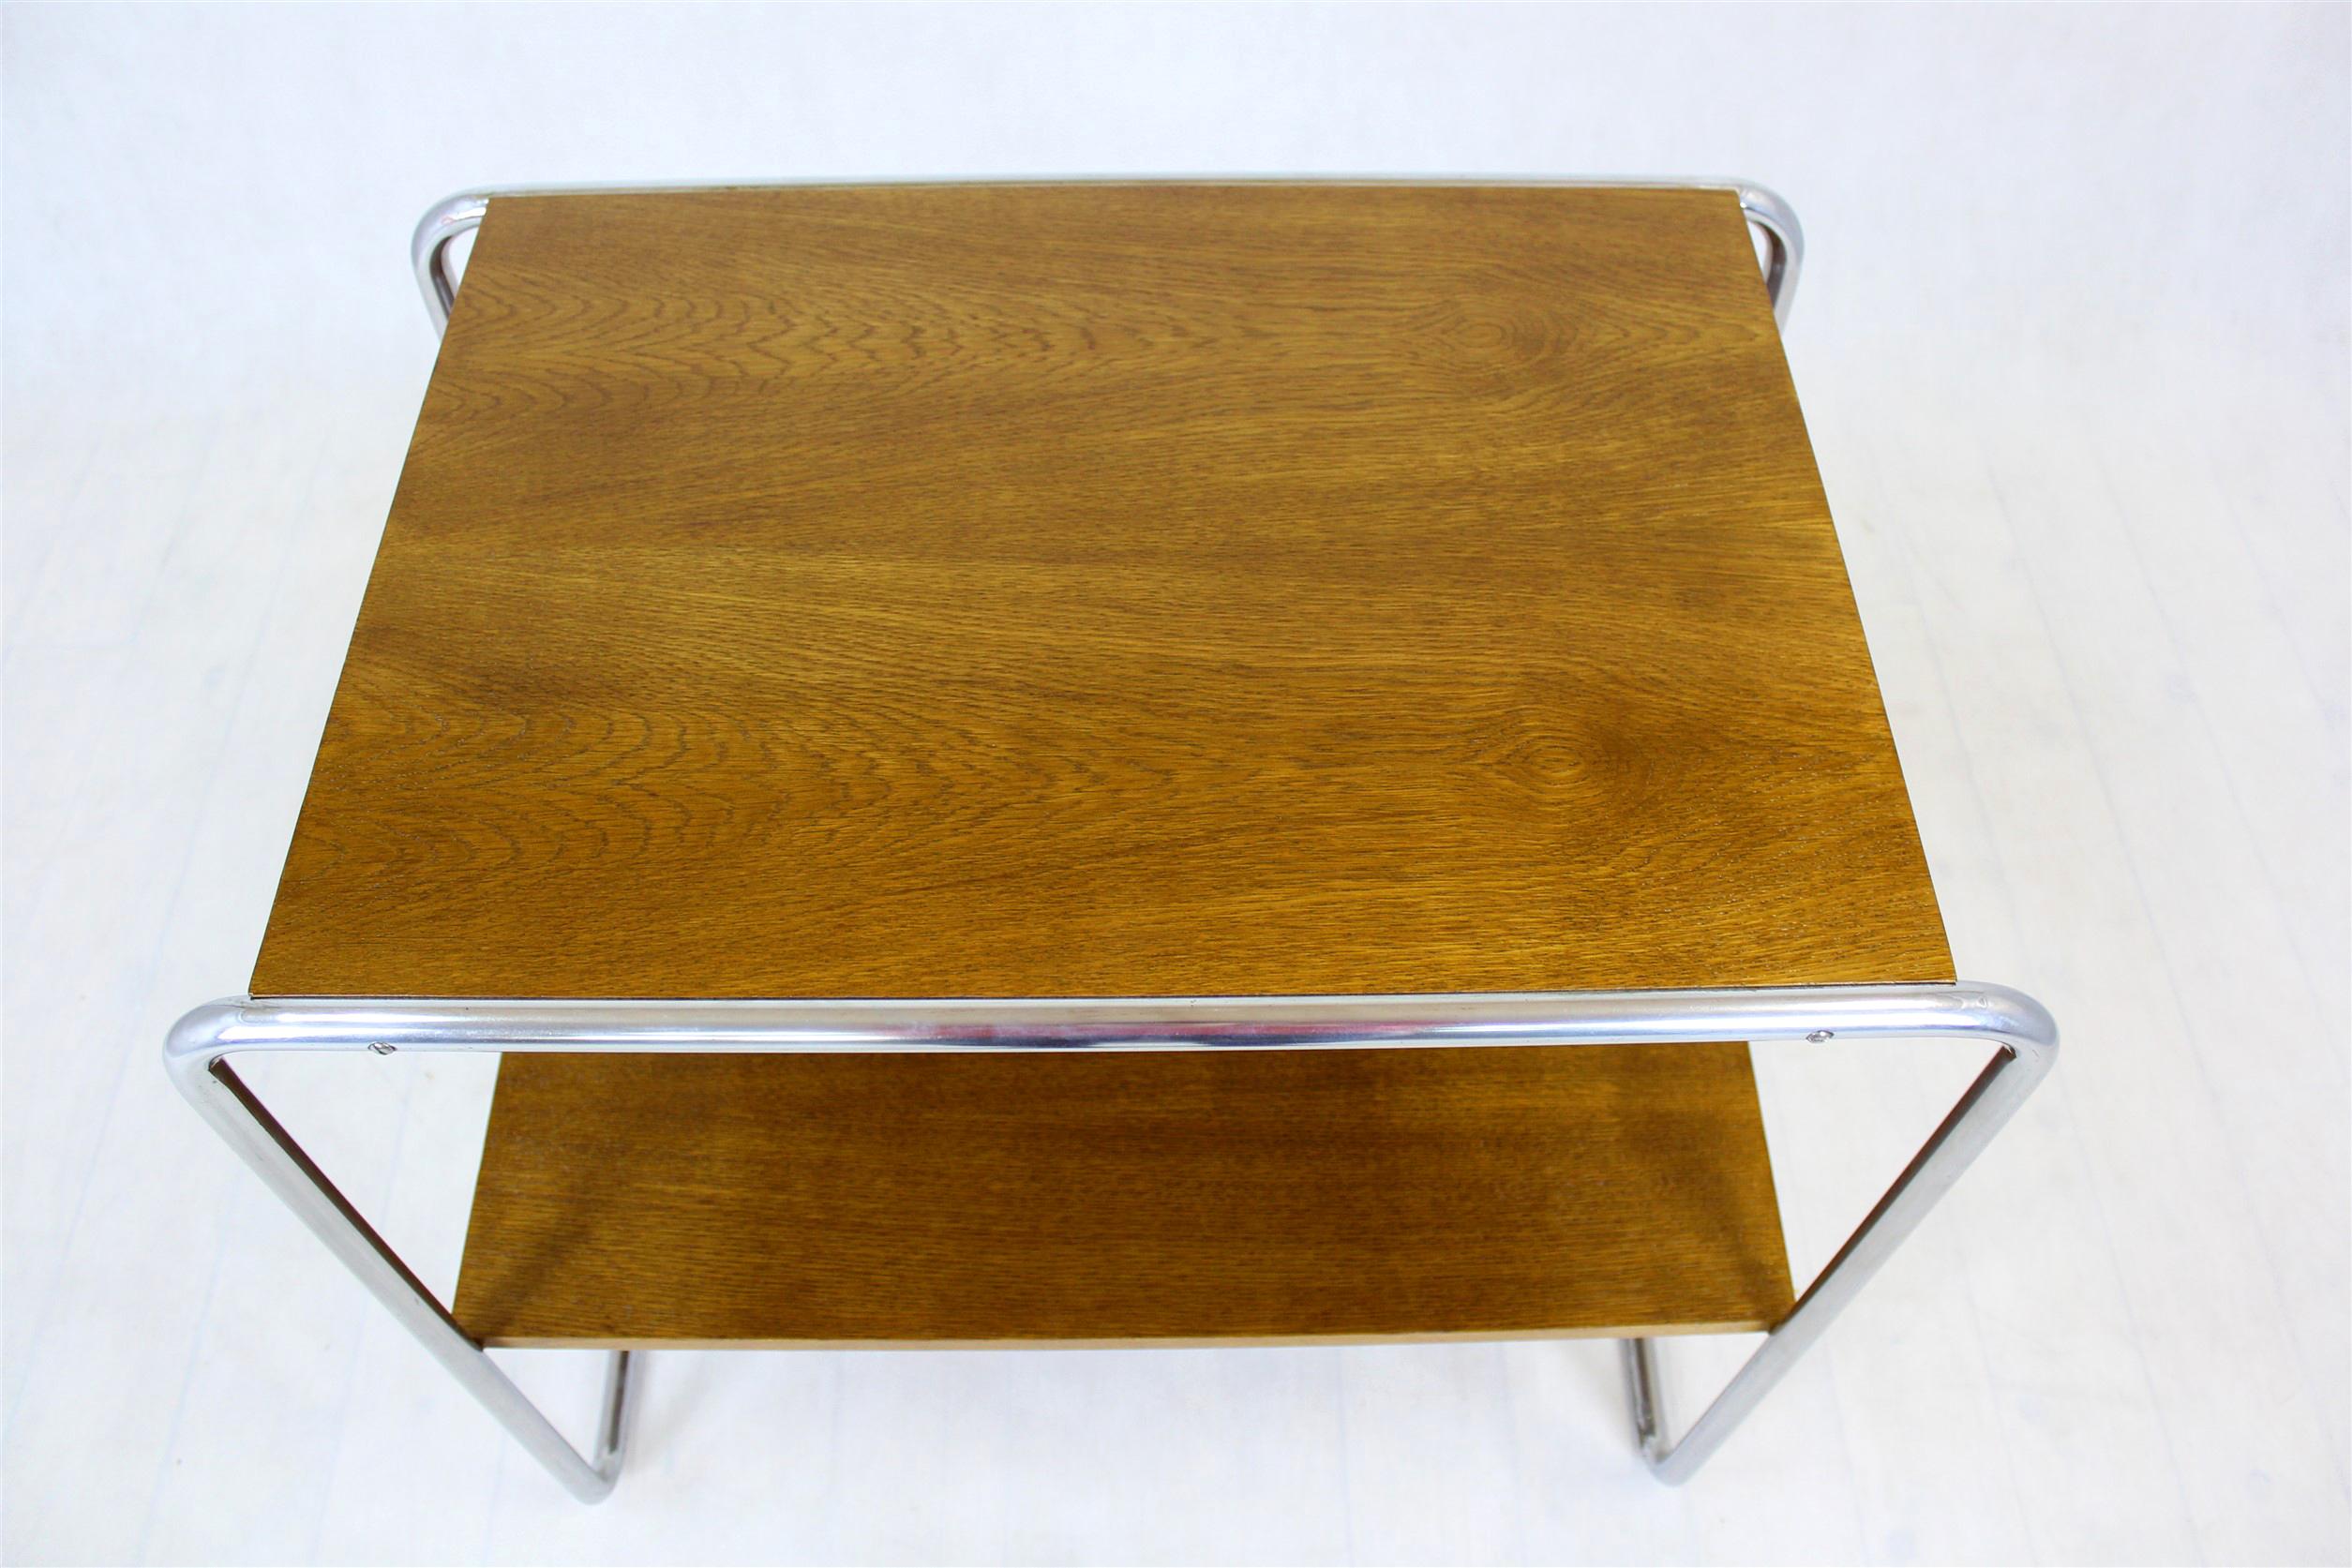 
Dieser Konsolentisch (Mod. B12) wurde von Marcel Breuer in den 1930er Jahren entworfen. Er verfügt über zwei Ablagen, die von einem verchromten Stahlrohrrahmen getragen werden. Die Holzelemente wurden restauriert und lackiert, der Chrom ist in